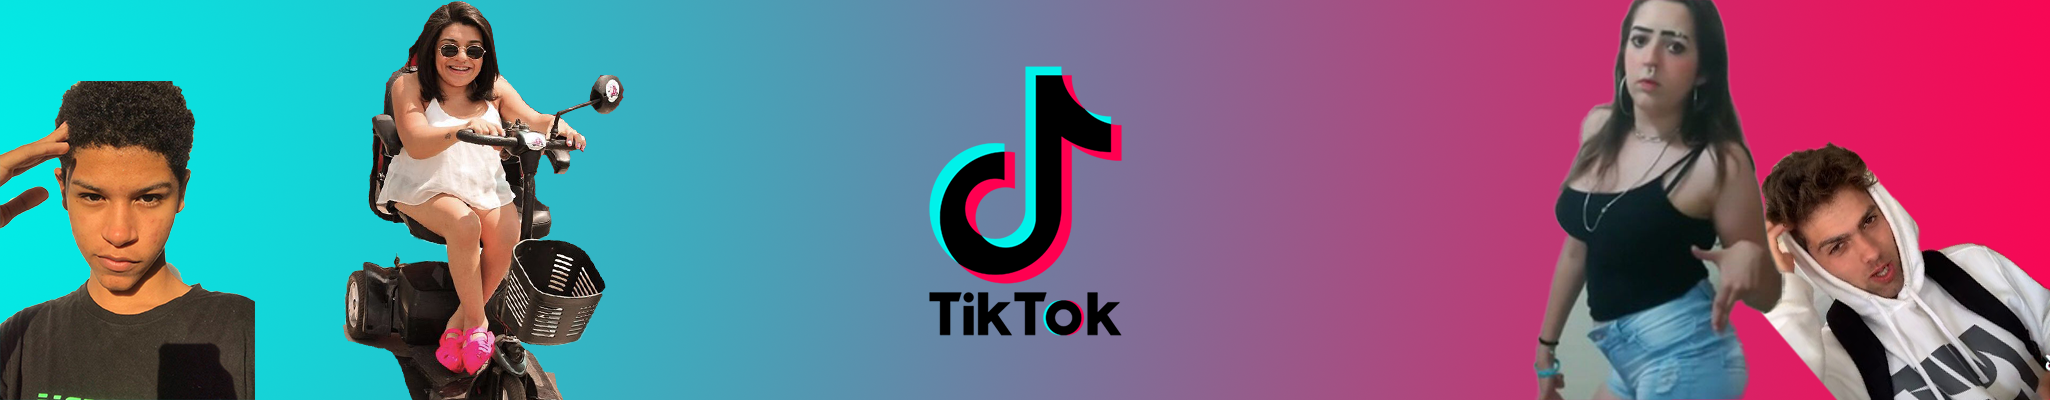 Tutorial: Como usar o TikTok